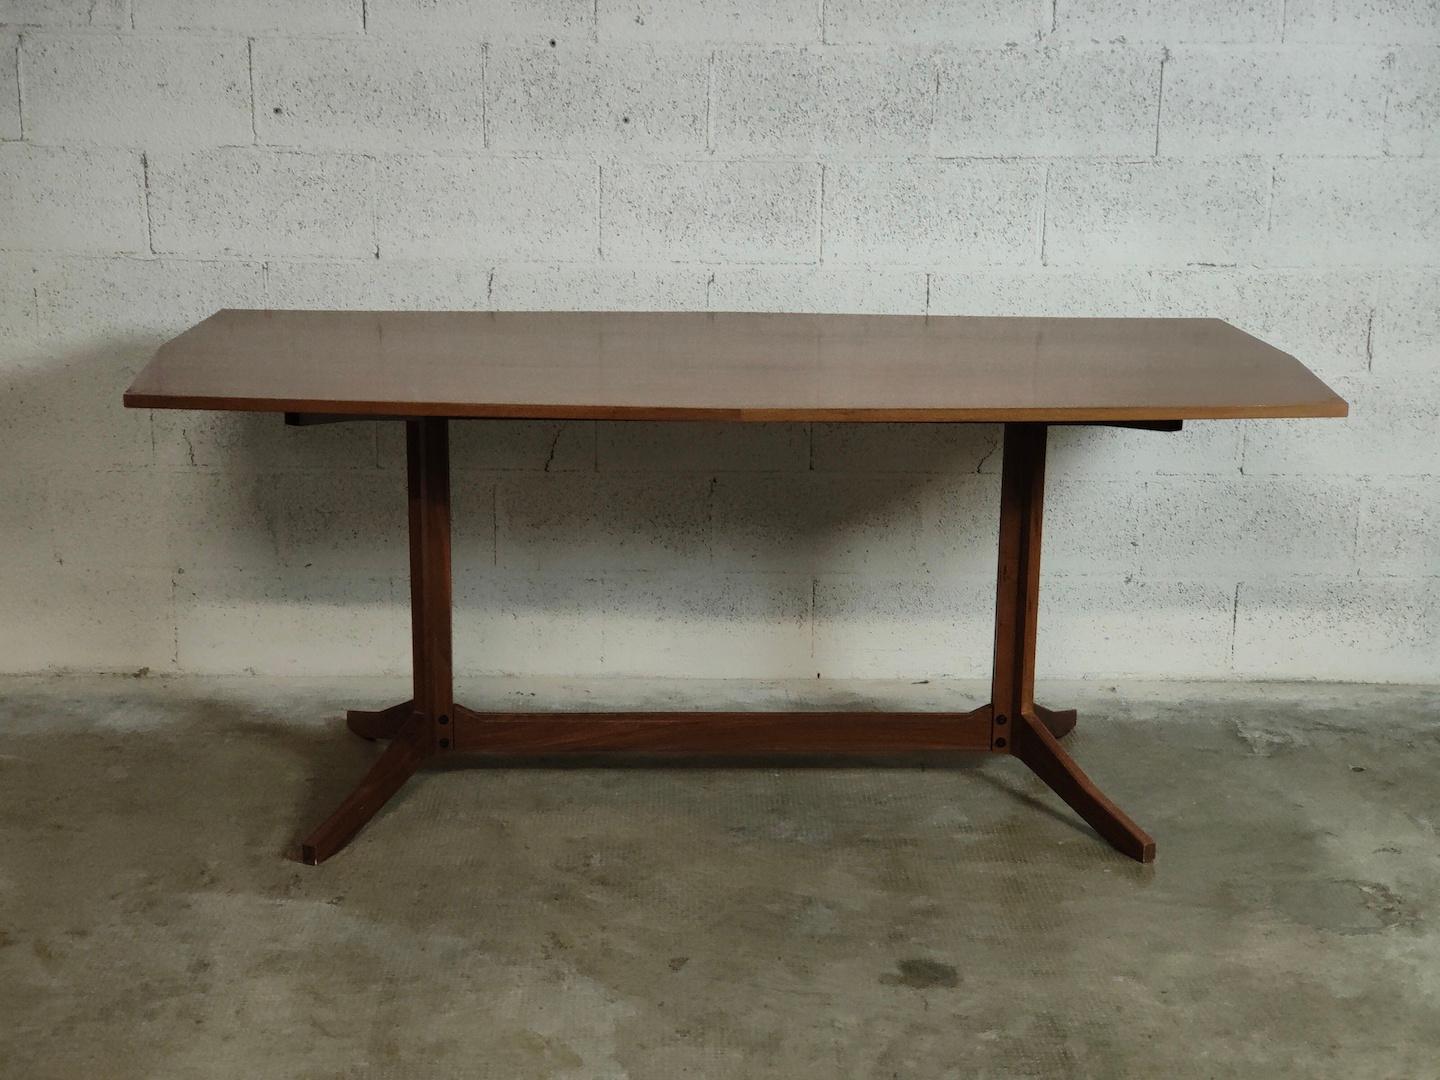 Table de salle à manger en bois modèle TL22 par Franco Albini pour Poggi 60s.
Né à Milan en 1905, Franco Albini est un architecte, urbaniste et designer de mobilier italien, actif entre les années 1930 et 1960. Il a étudié à l'école polytechnique de